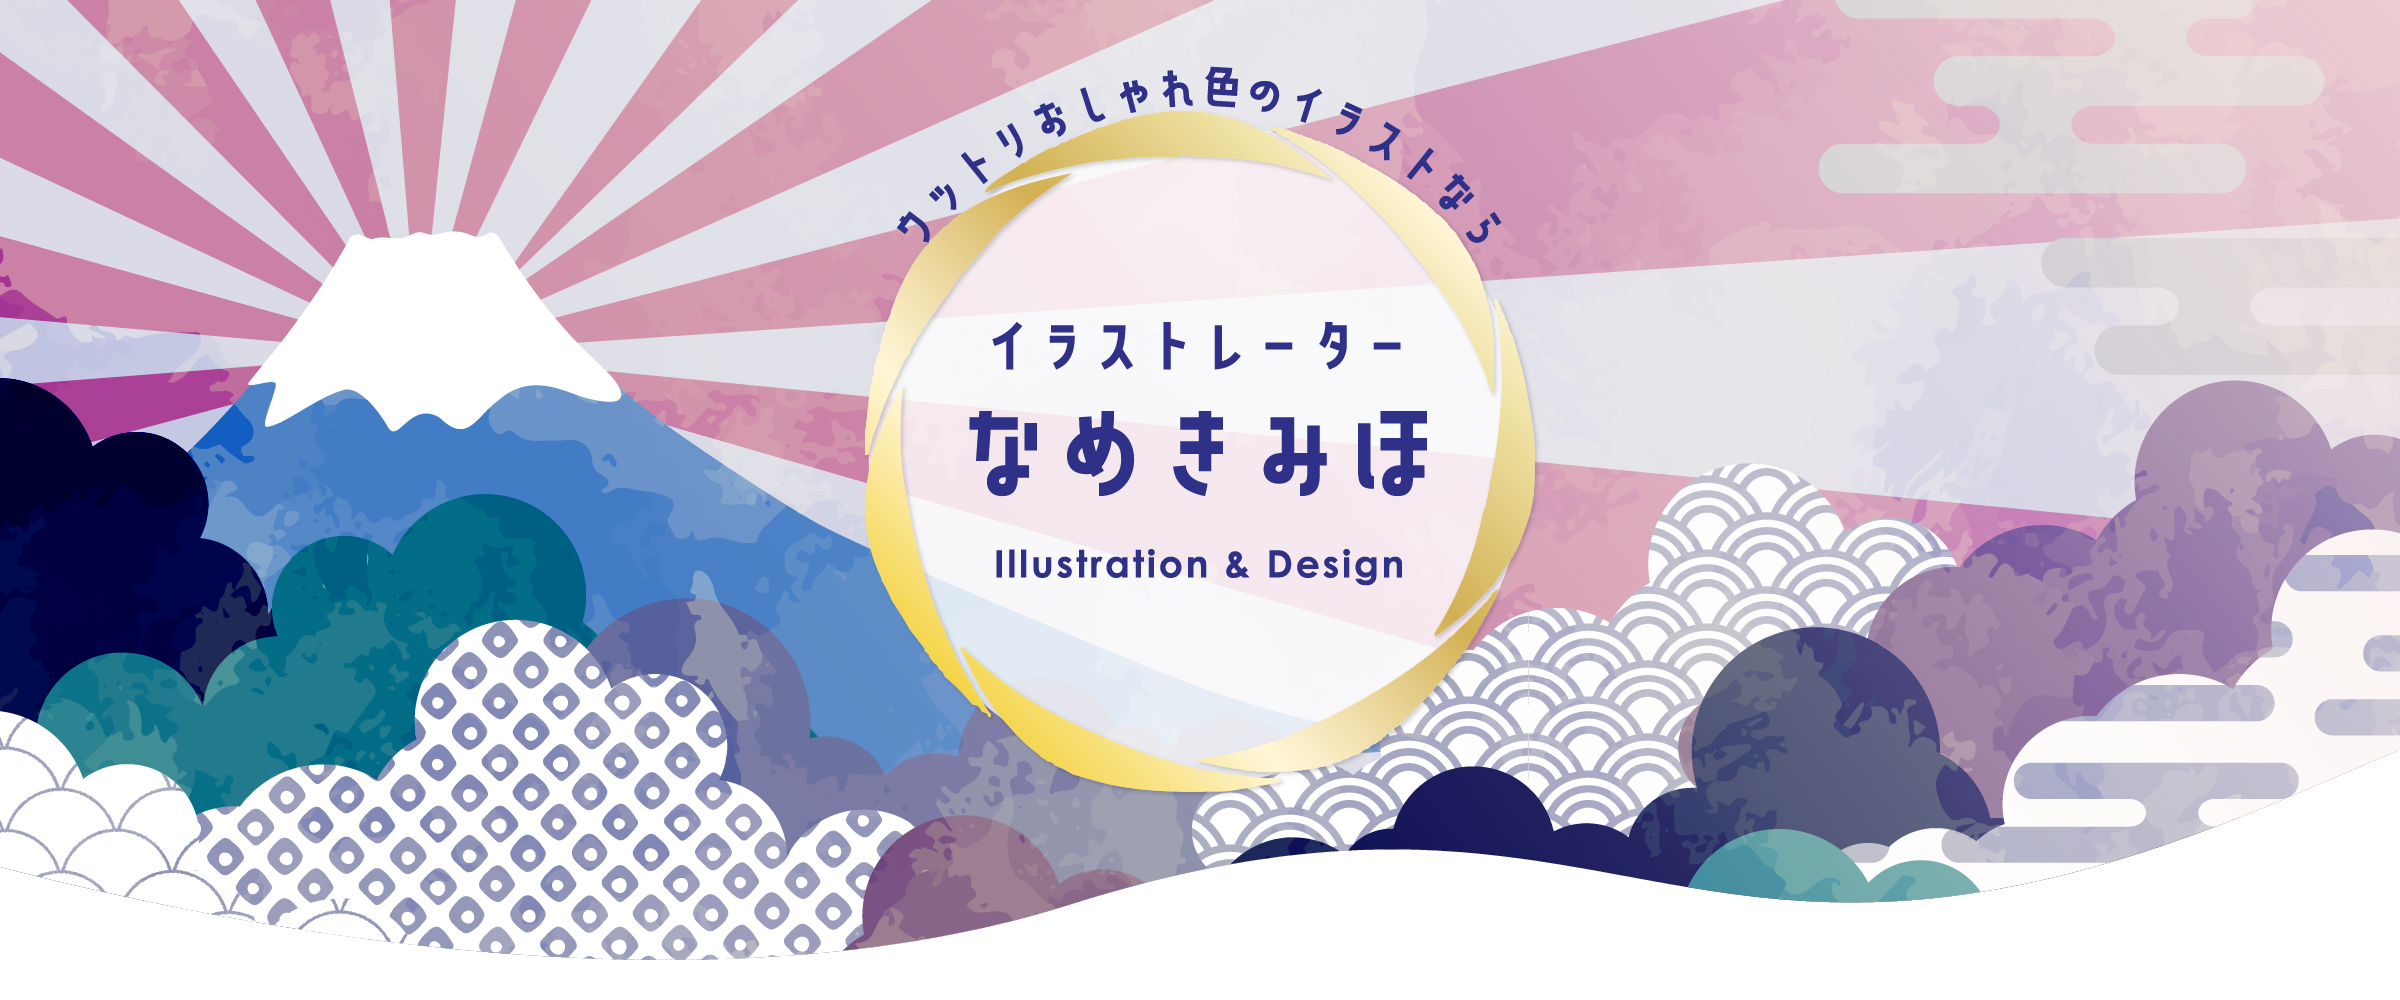 Miho Nameki Illustration Design イラストレーターなめきみほのホームページ うっとりため息が出るような おしゃれな 色合いのイラストを描いています 挿絵 装画 プロダクト 広告 パッケージ ステーショナリーなど